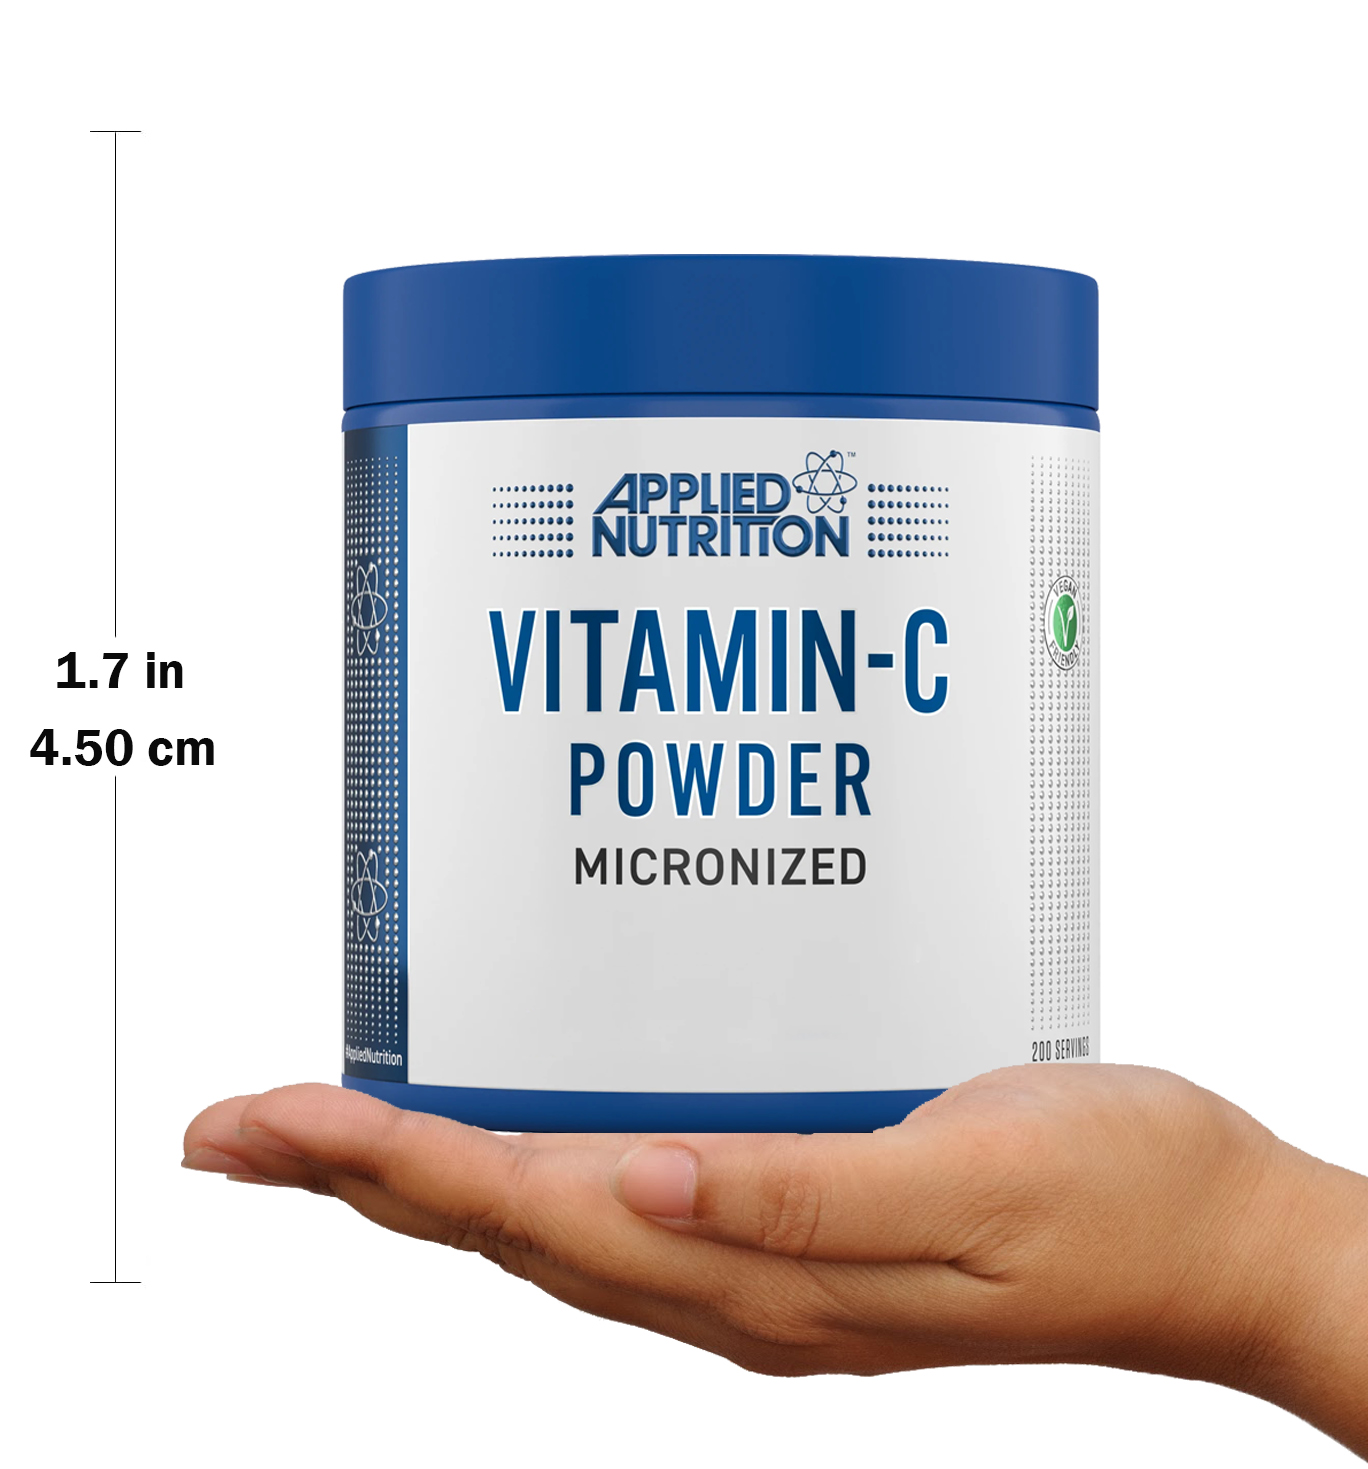 أبلايد نيوتريشن فيتامين سي بودر (200 حصة غذائية) APPLIED NUTRITION VITAMIN-C 